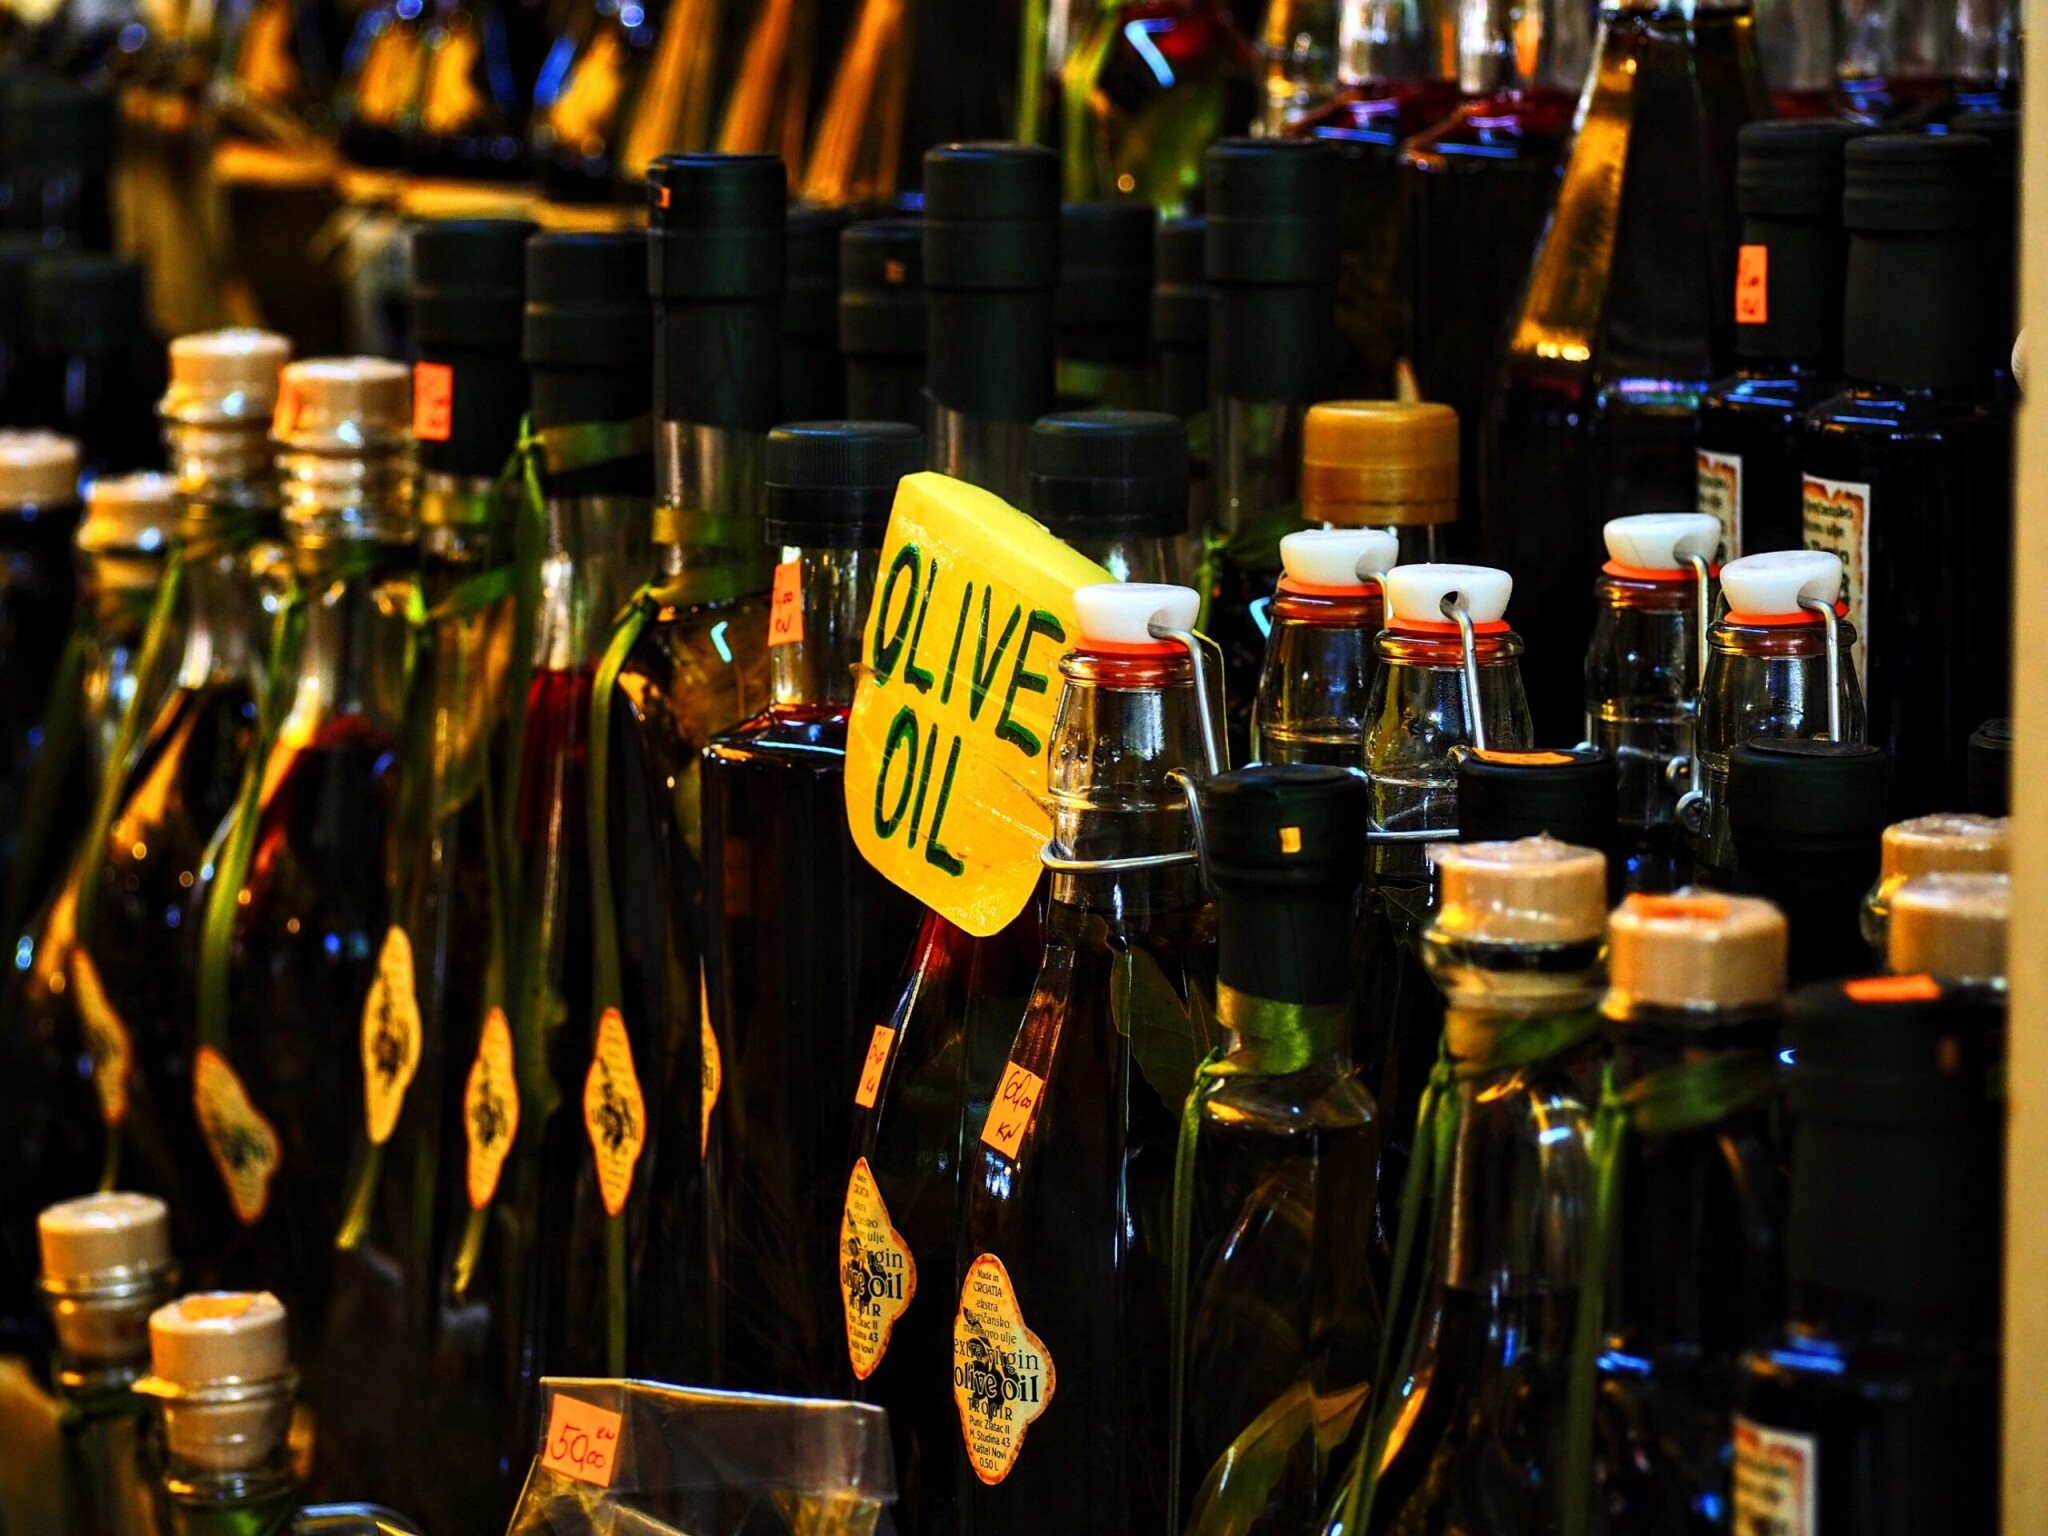 Annyi olívaolajat lopnak a spanyol boltokból, hogy a polcokhoz lakatolták az üvegeket